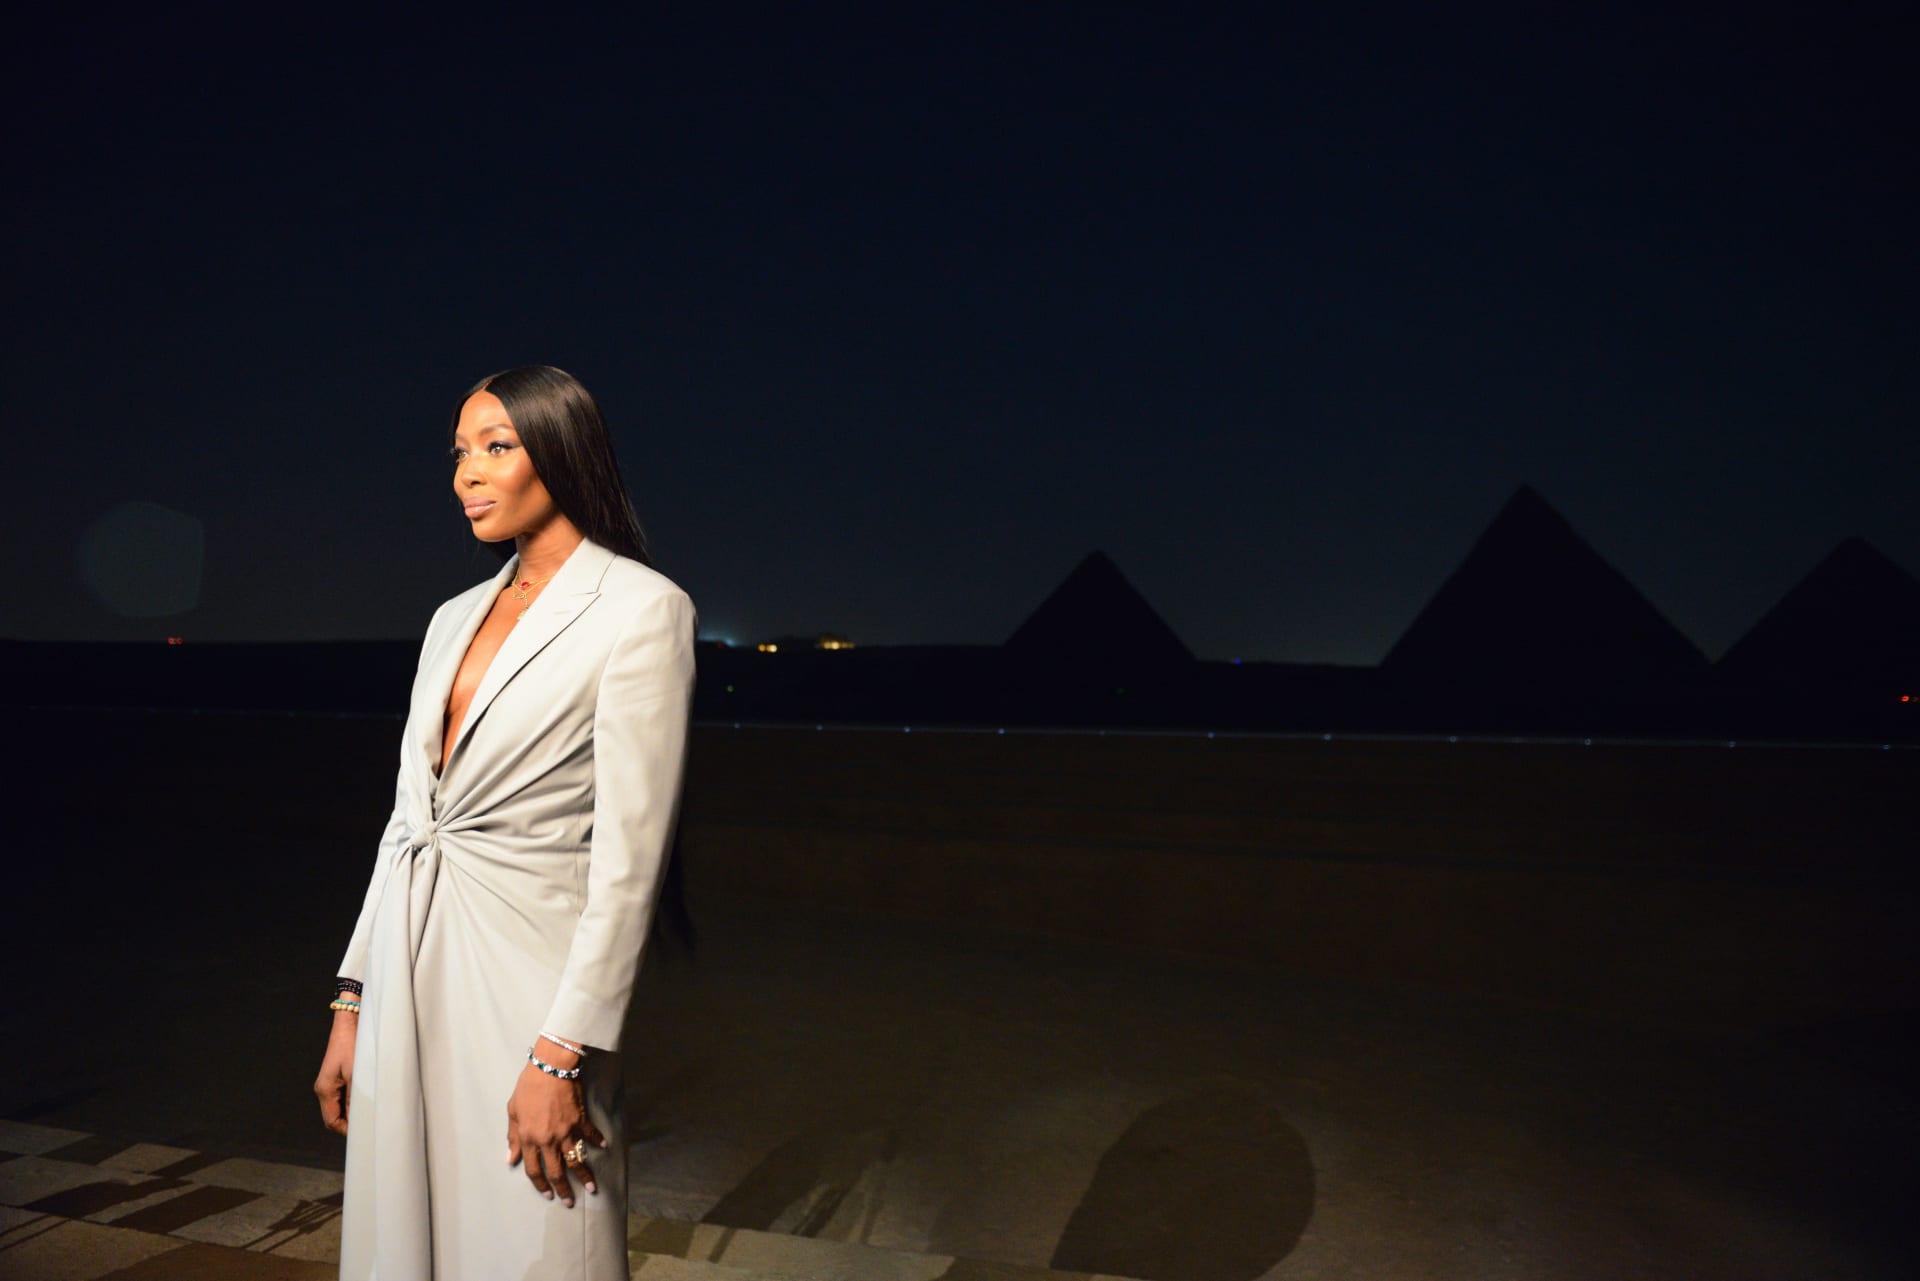 Dior Fashion Show bei den Pyramiden von Gizeh